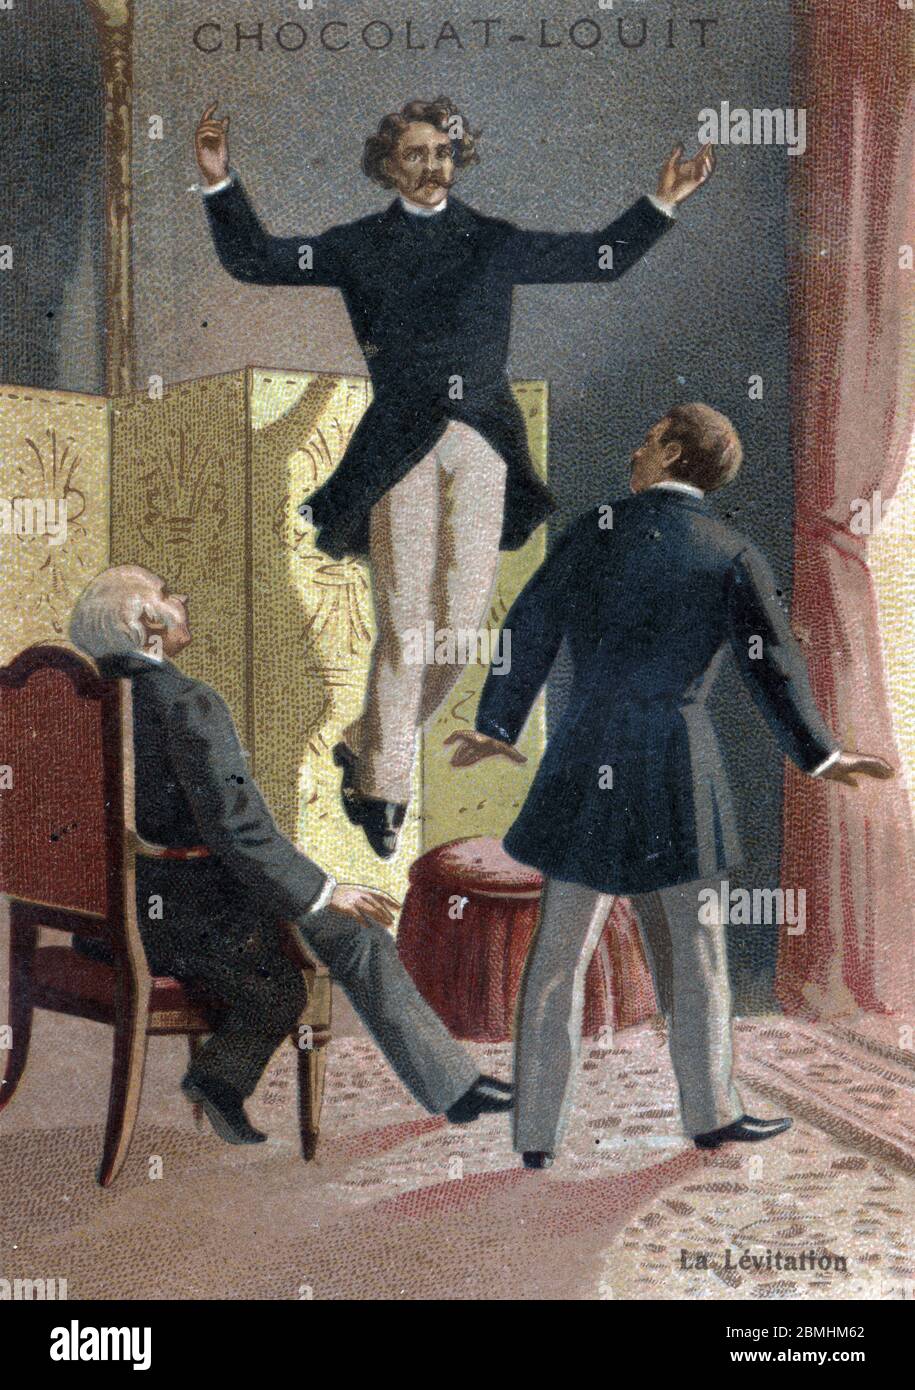 Phenomene paranormal : la levitation du medium et voyant ecosais Daniel DUNGLAS Home (1833-1886) s'elevant dans les airs sous les yeux de temoins stu Foto de stock